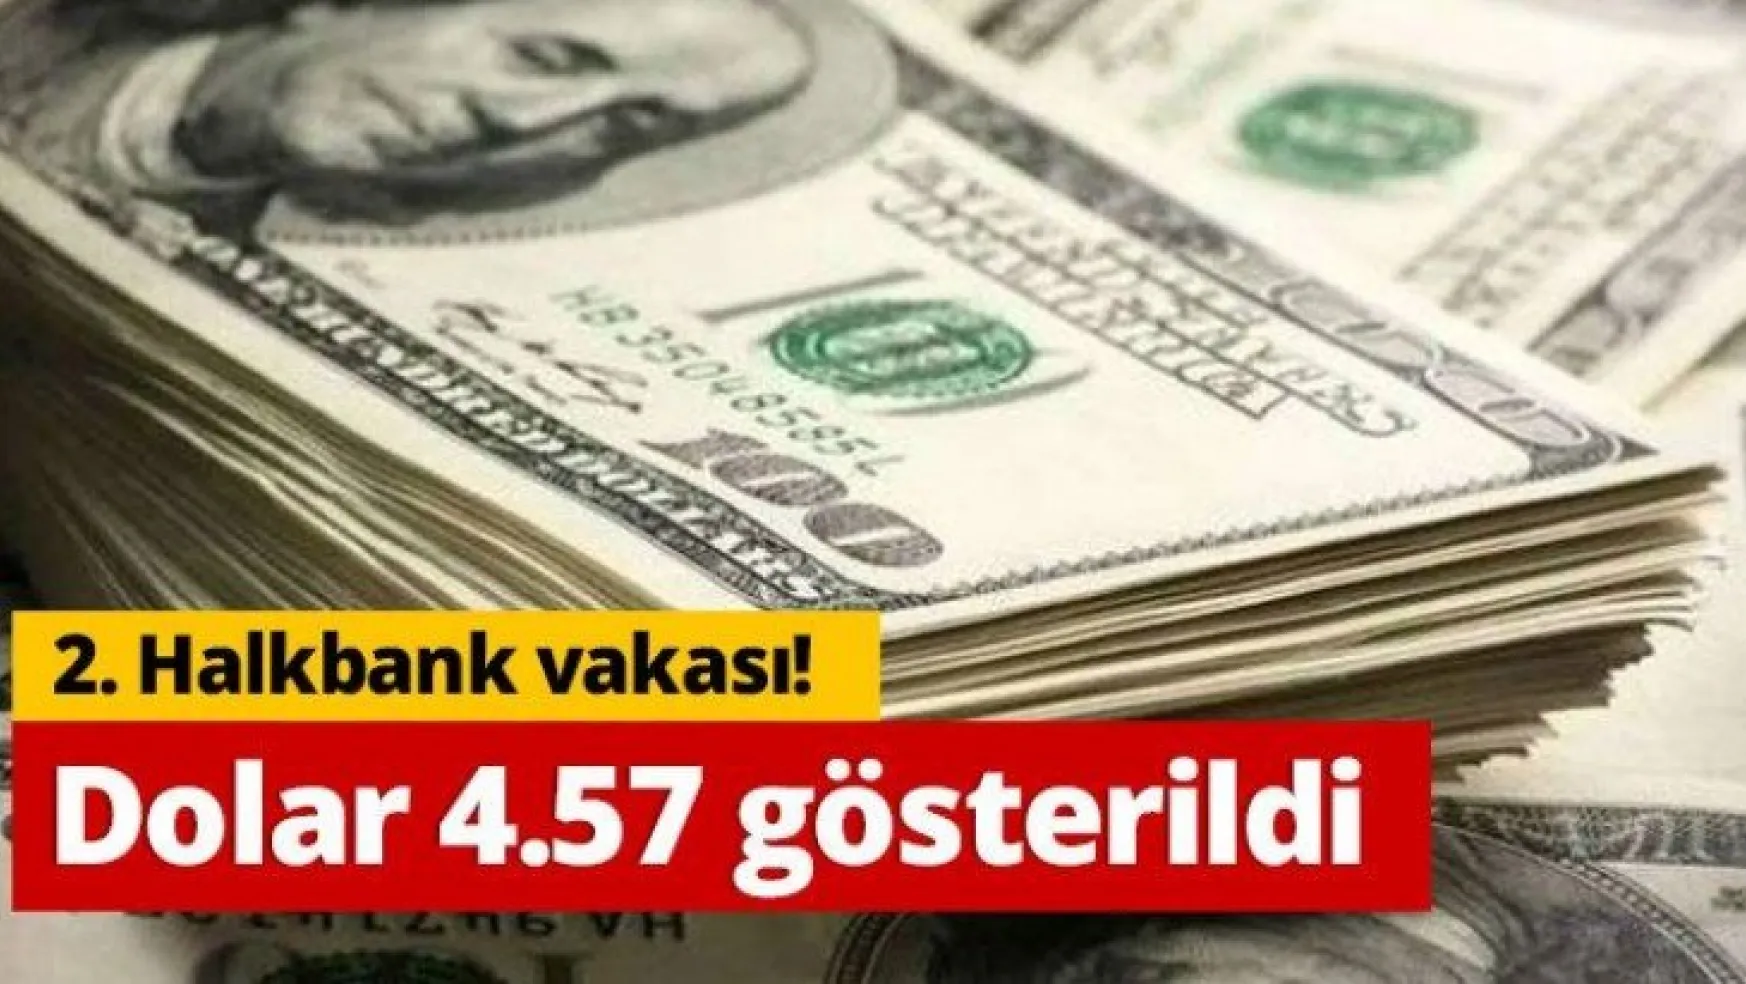 2. Halkbank vakası! Dün gece dolar 4.57 gösterildi